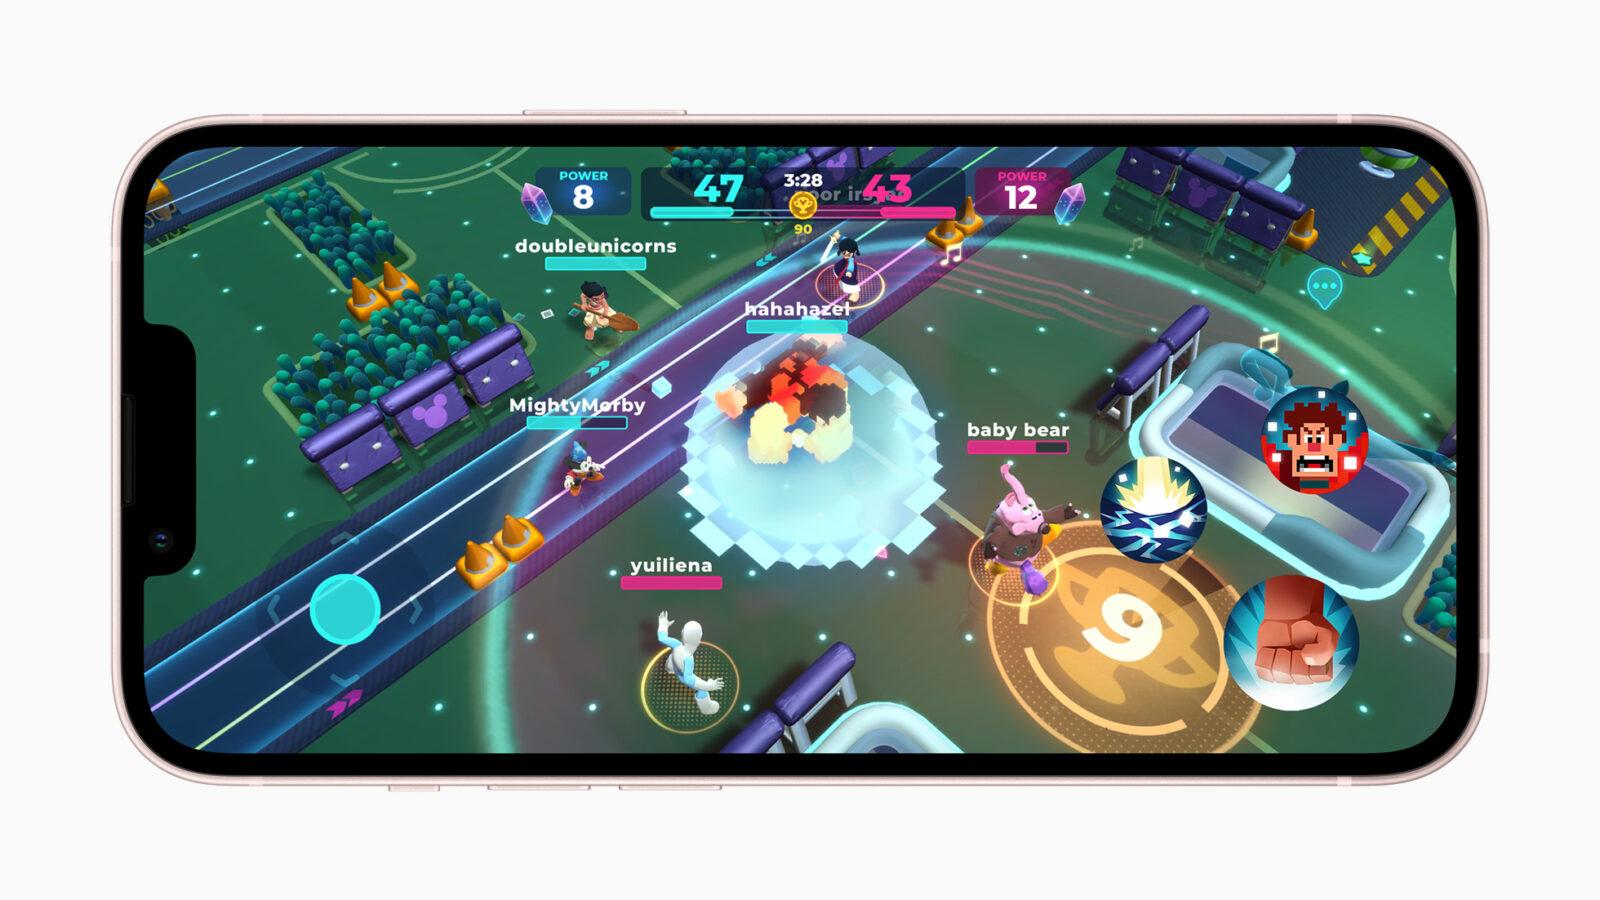 Игра Disney Melee Mania выходит в декабре — только в сервисе Apple Arcade (Apple Arcade Update disney melee mania gameplay 01 11152021)